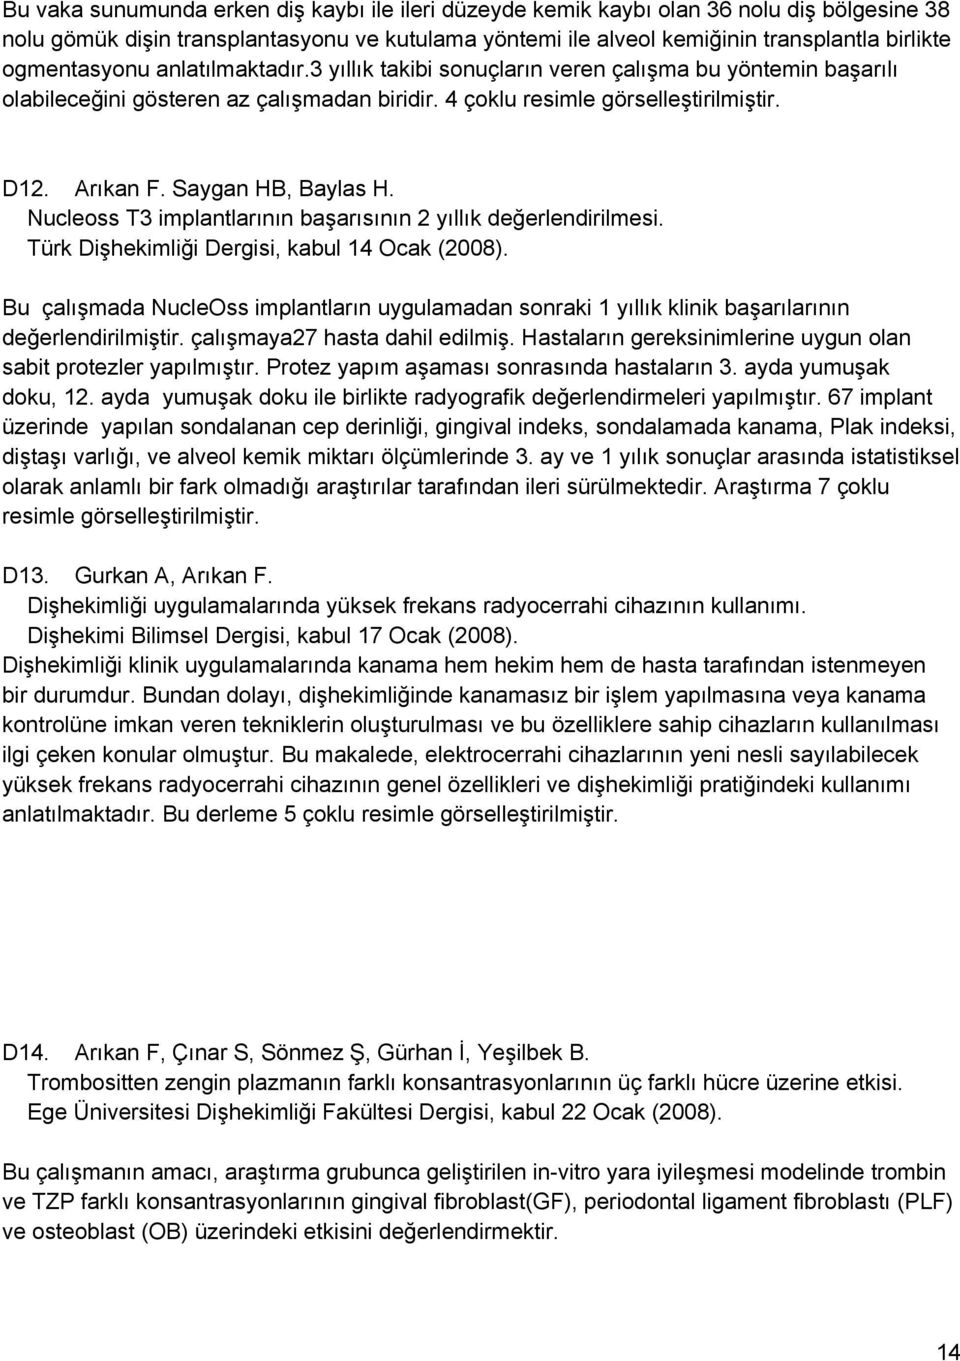 Saygan HB, Baylas H. Nucleoss T3 implantlarının başarısının 2 yıllık değerlendirilmesi. Türk Dişhekimliği Dergisi, kabul 14 Ocak (2008).